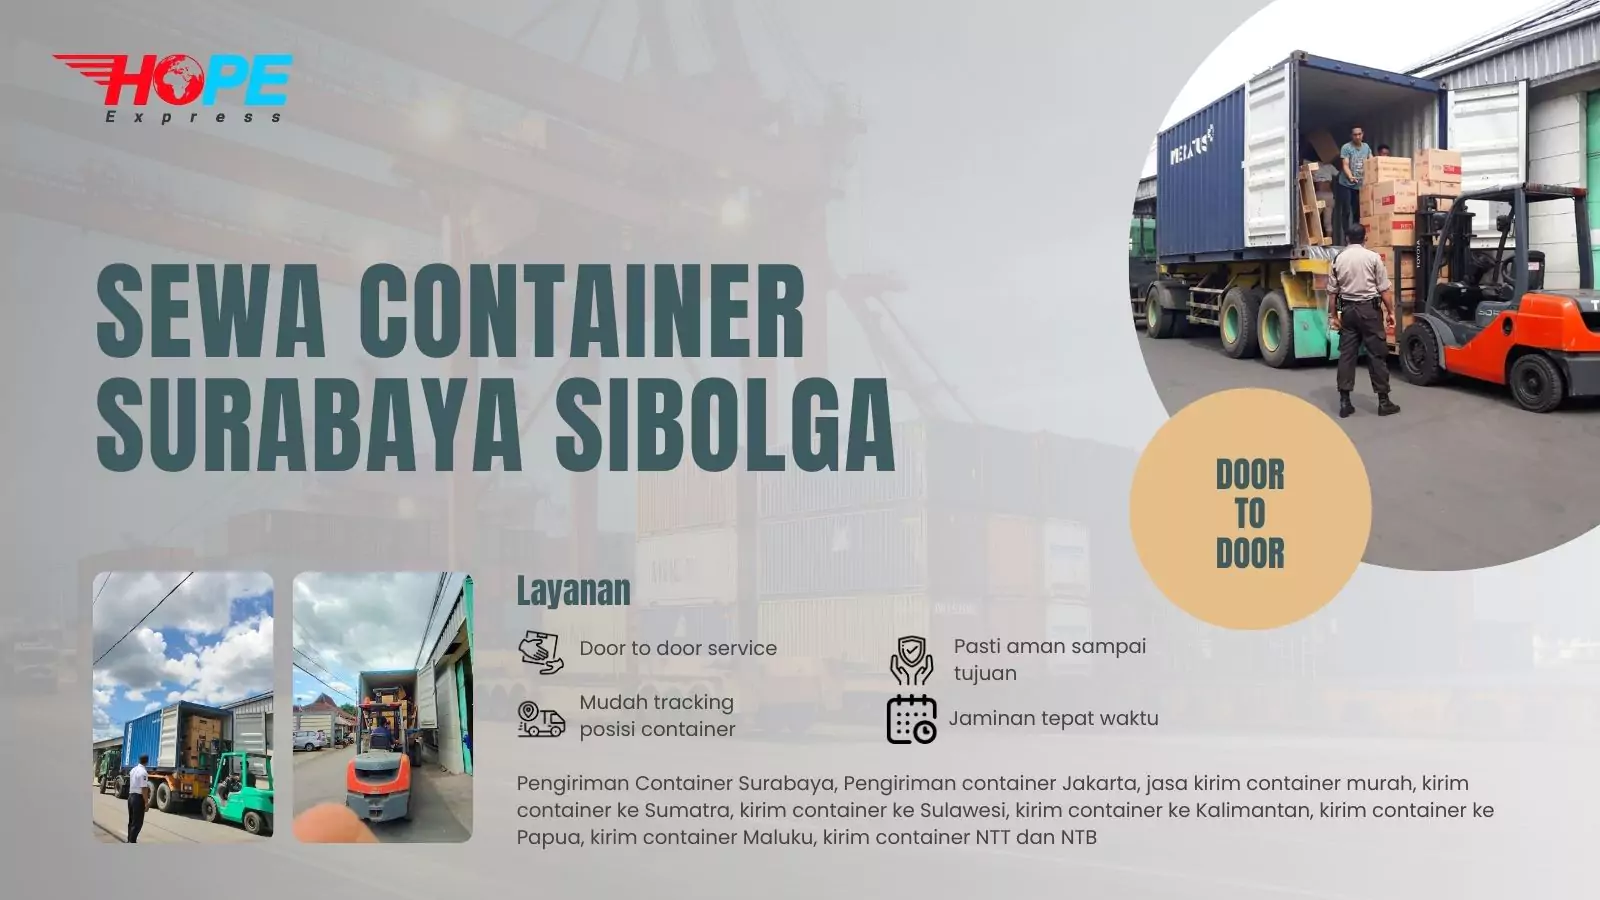 Sewa Container Surabaya Sibolga